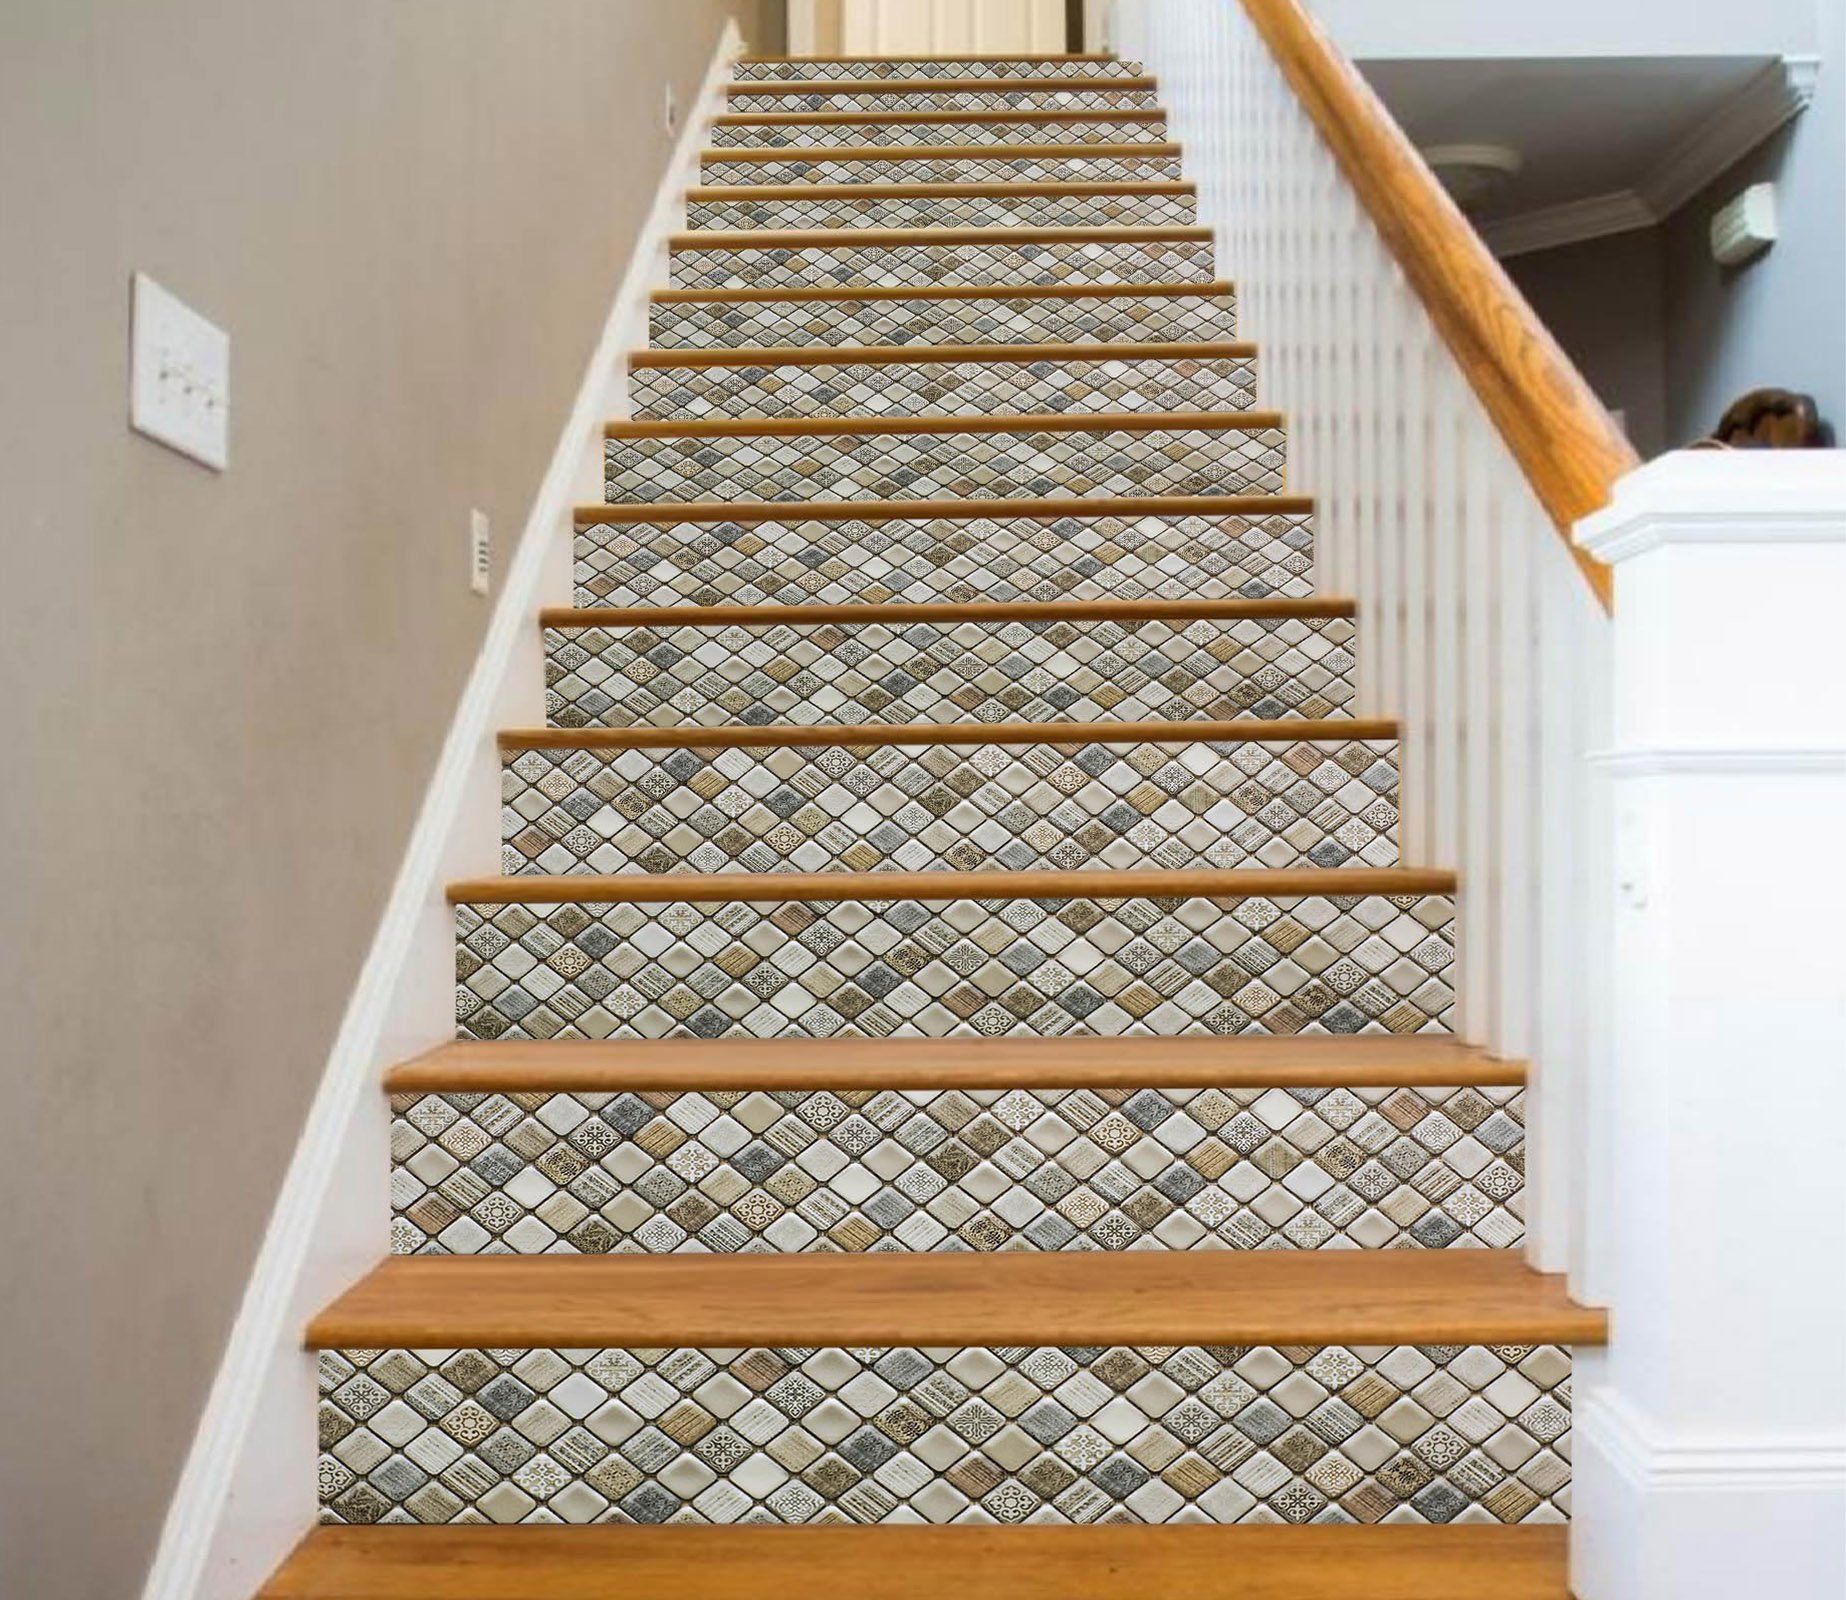 3D Retro Button Mosaic 912 Marble Tile Texture Stair Risers Wallpaper AJ Wallpaper 